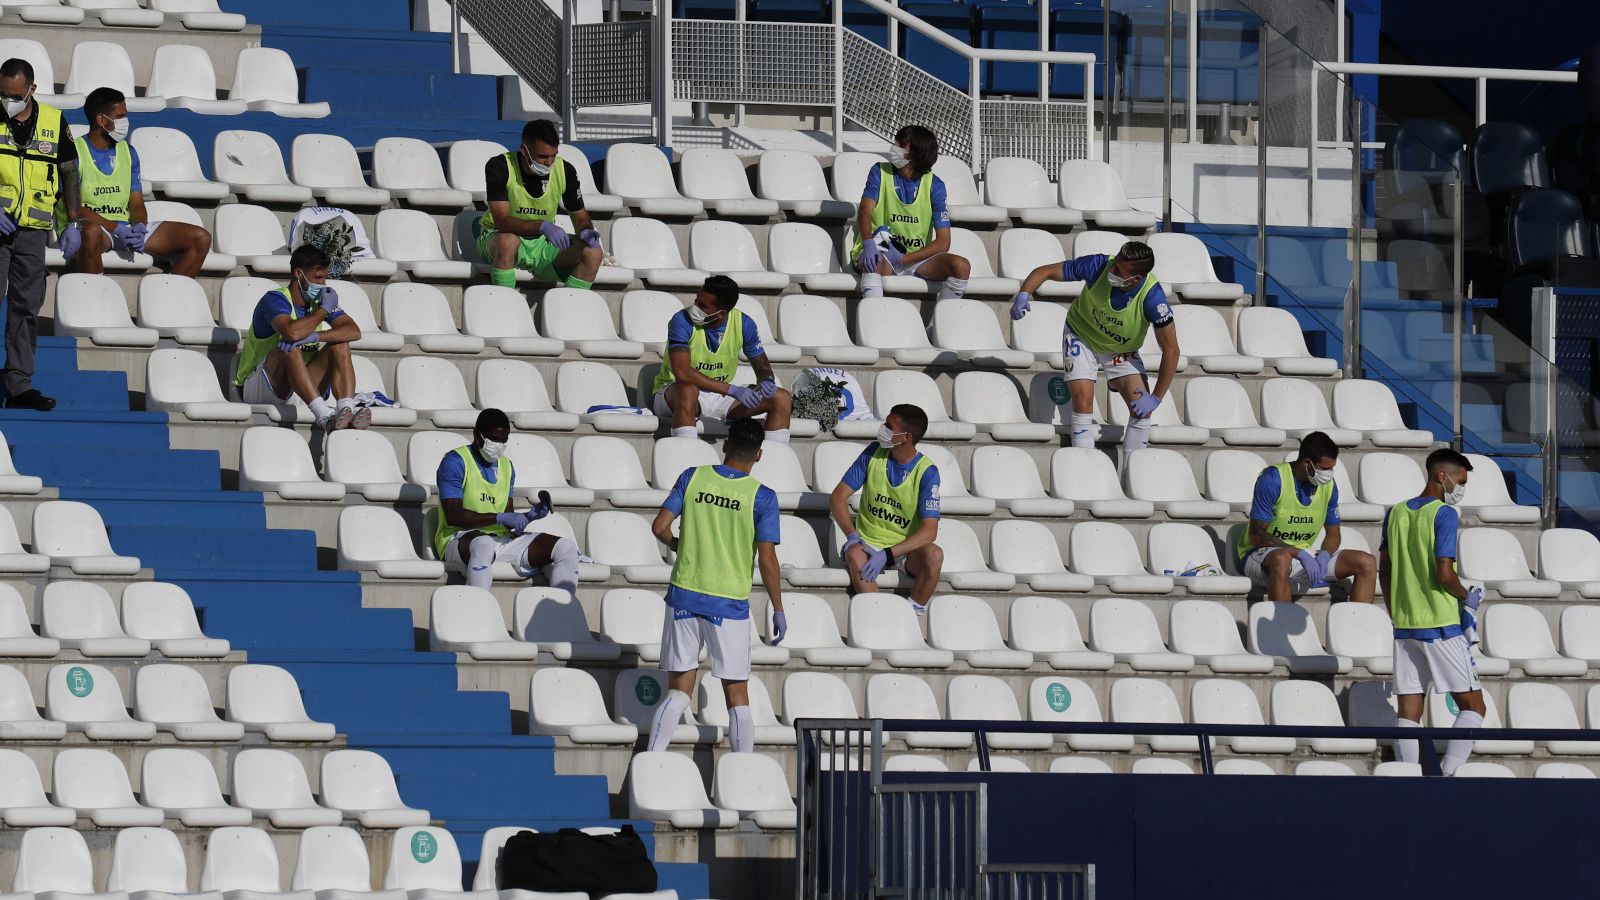 Jugadores suplentes en la grada del estadio del Leganés